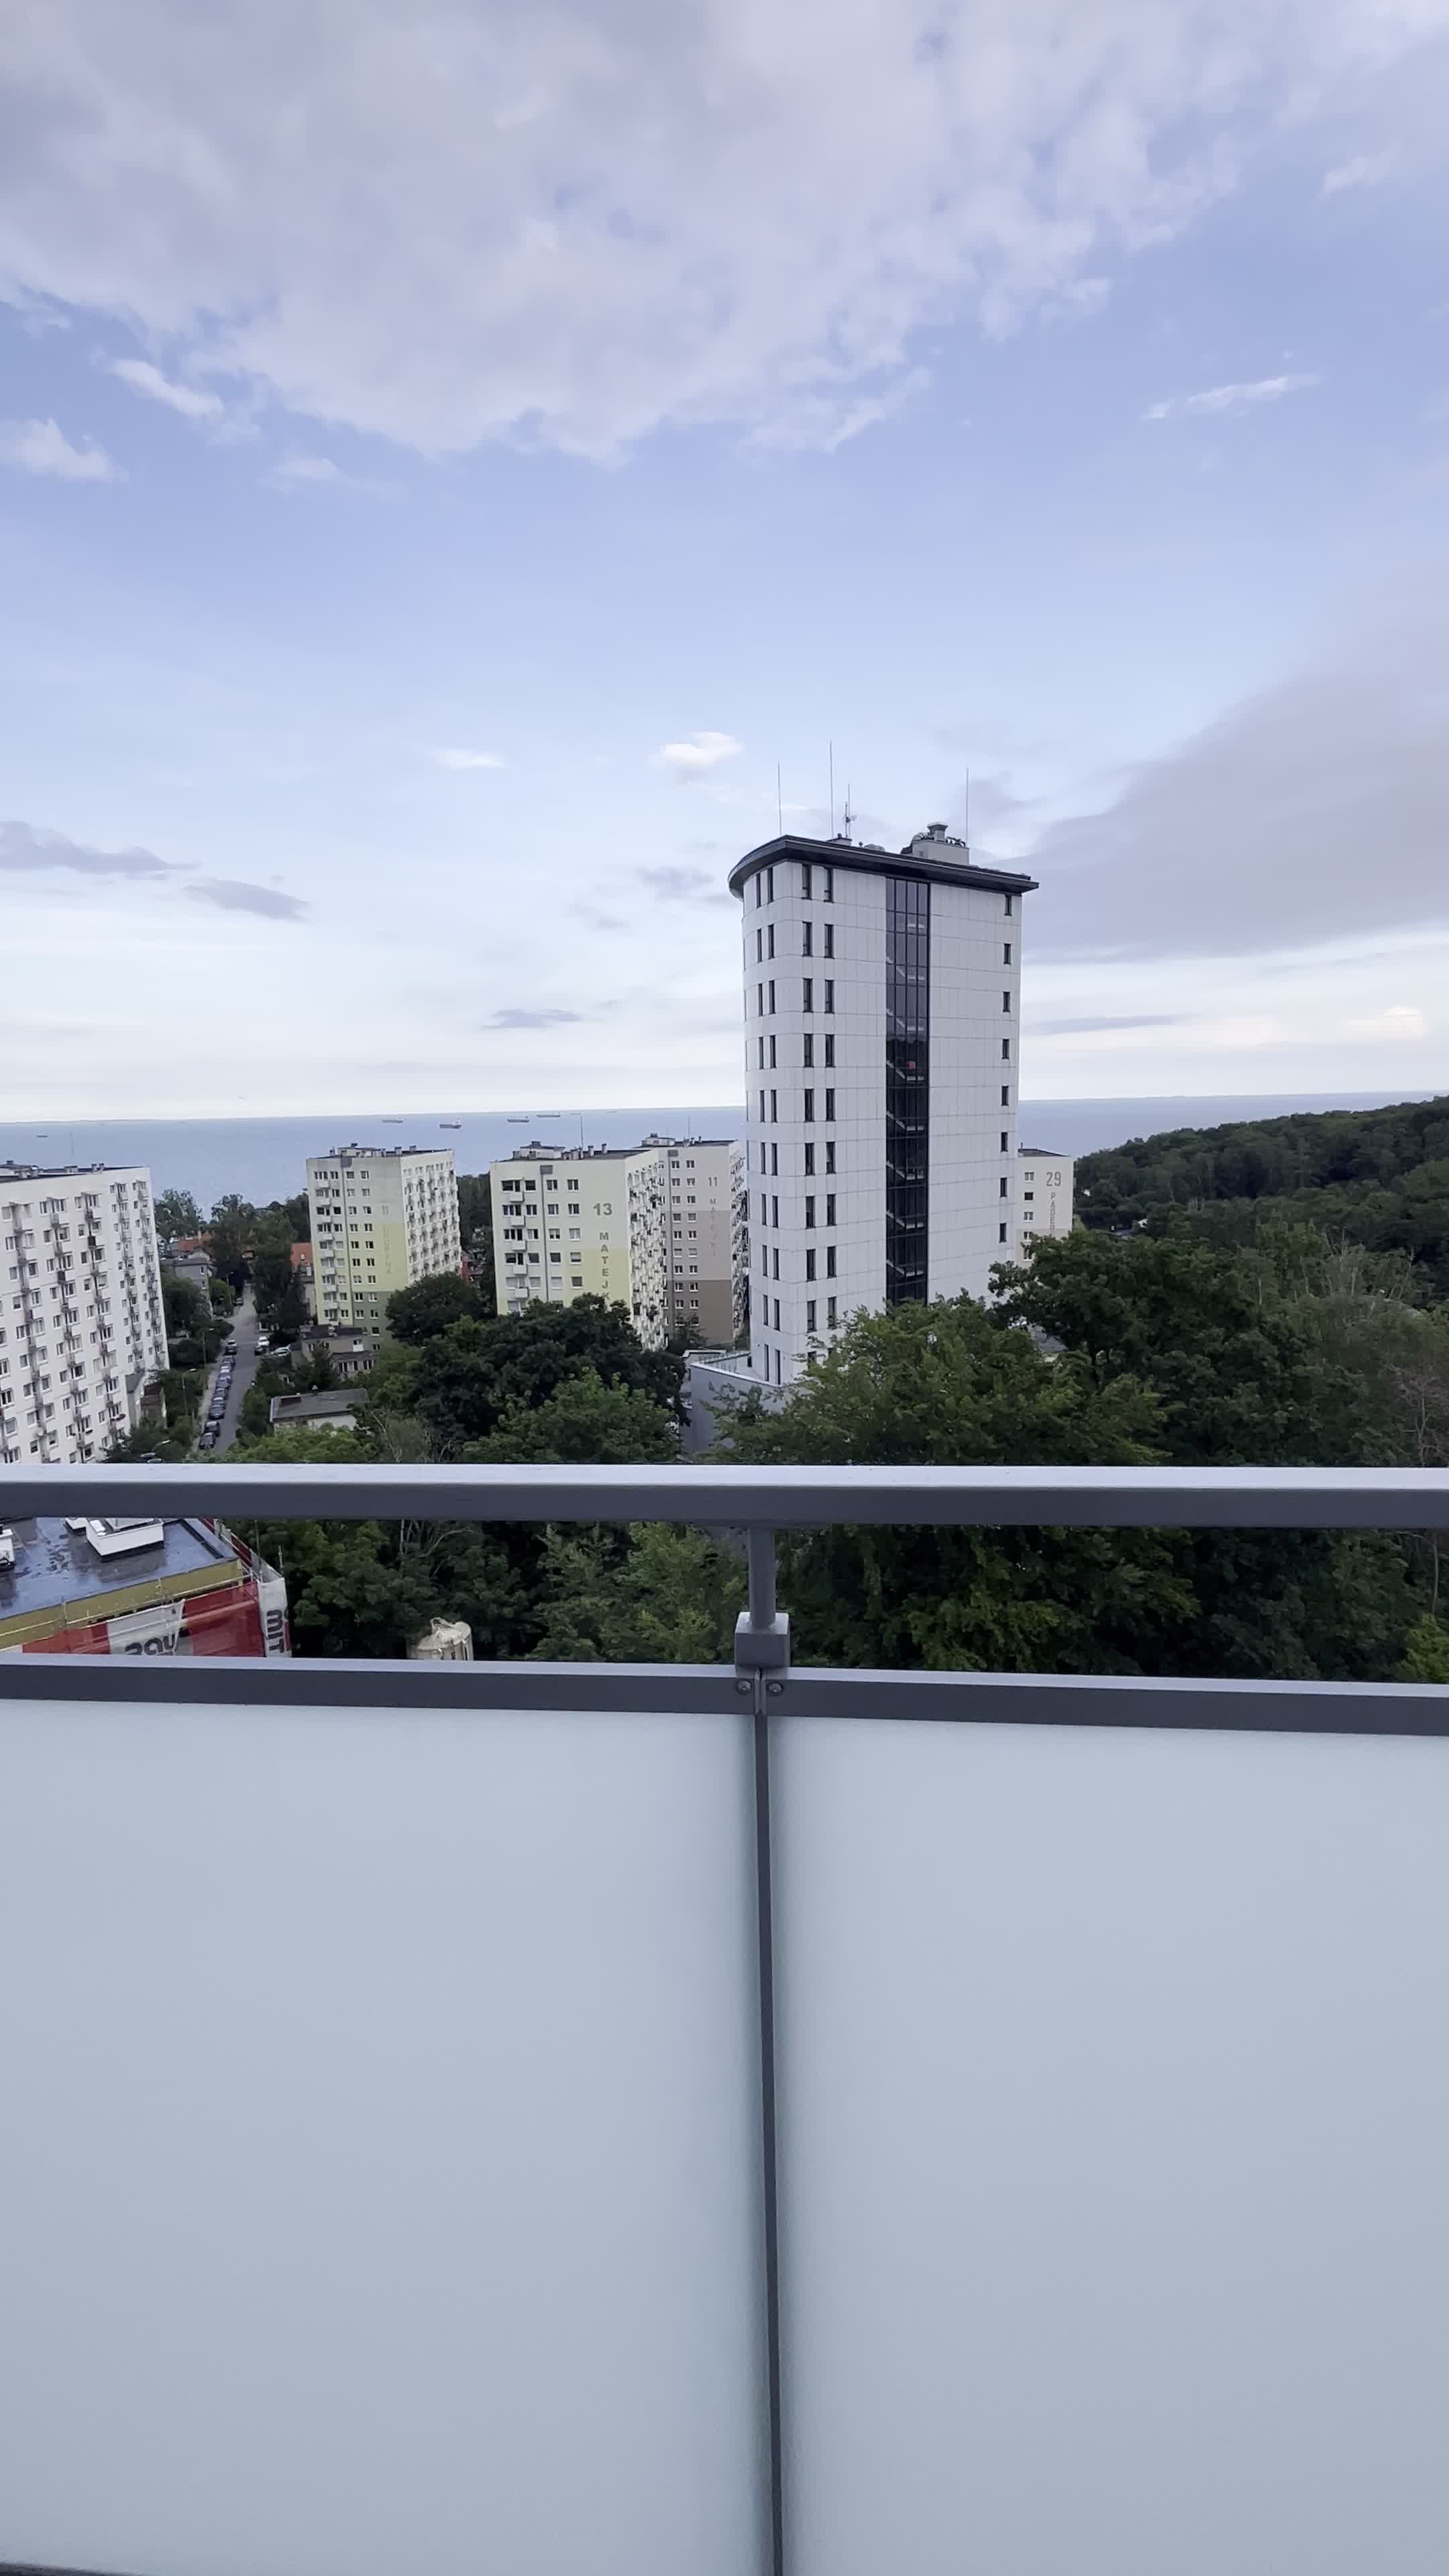 M1 z WiDOKiEM na MoRZE Parking Wzg.Św. Maks balkon 500m: centrum plaża: wideo 16771